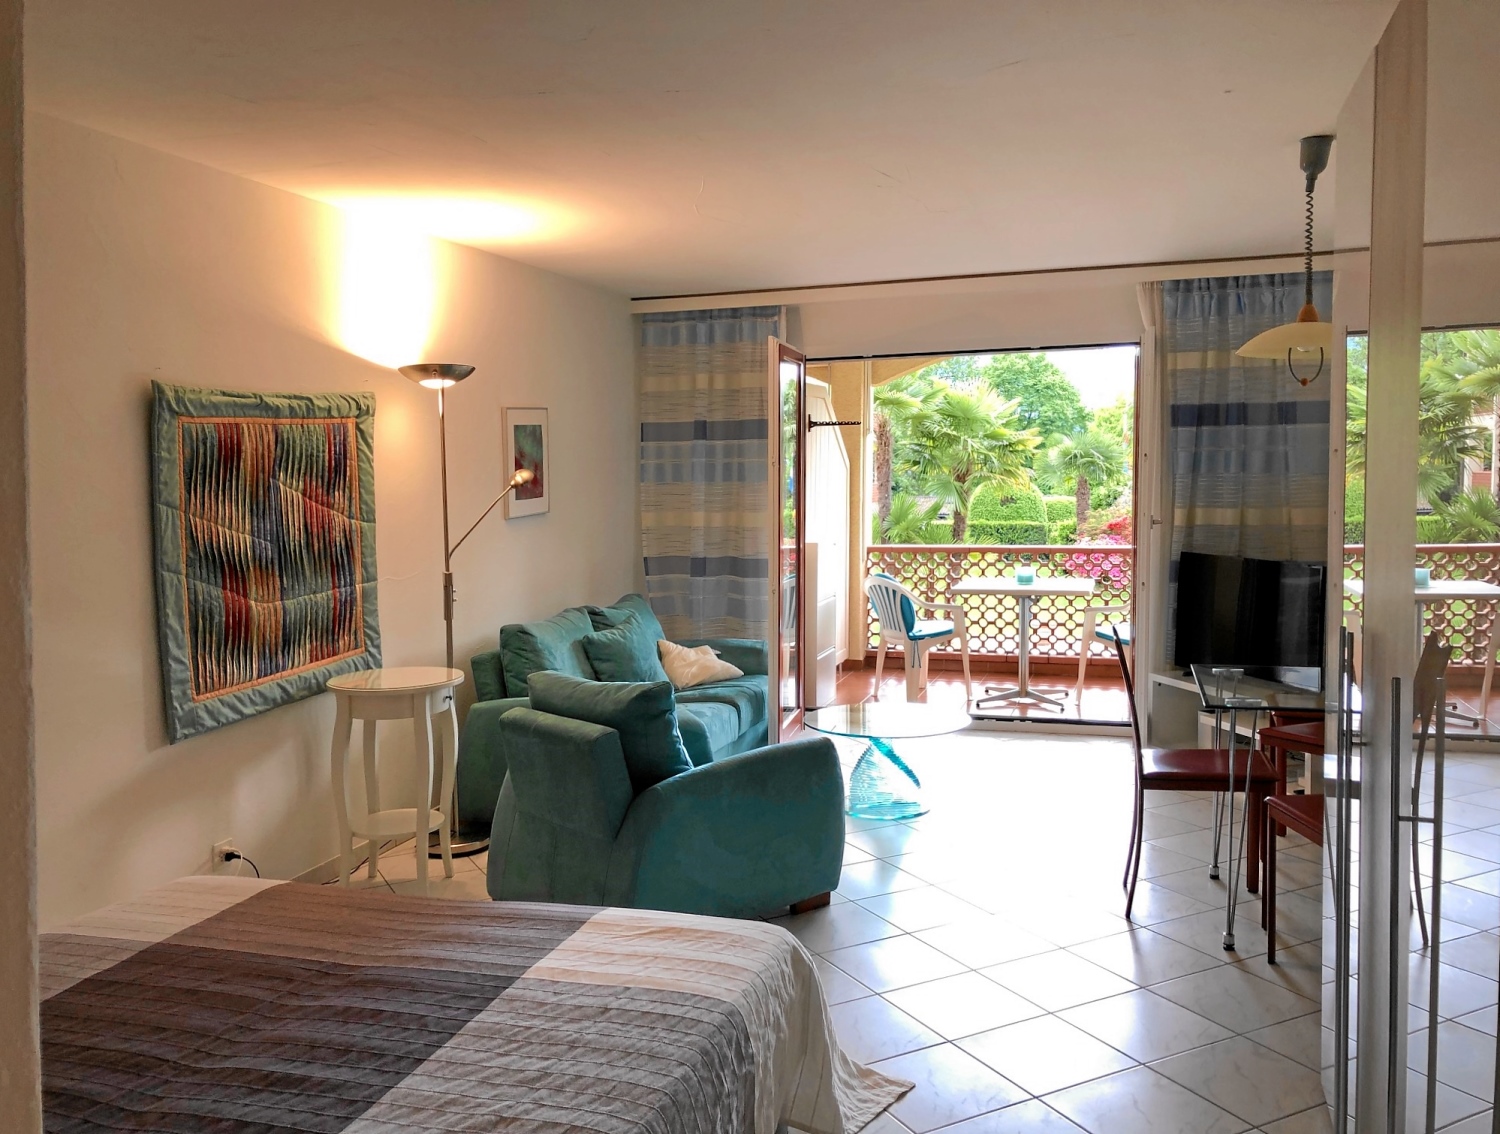 1,5-Zimmer- Ferienwohnung 'Residenza Parcolago', Via San Michele 50, Caslano, Region Lugano